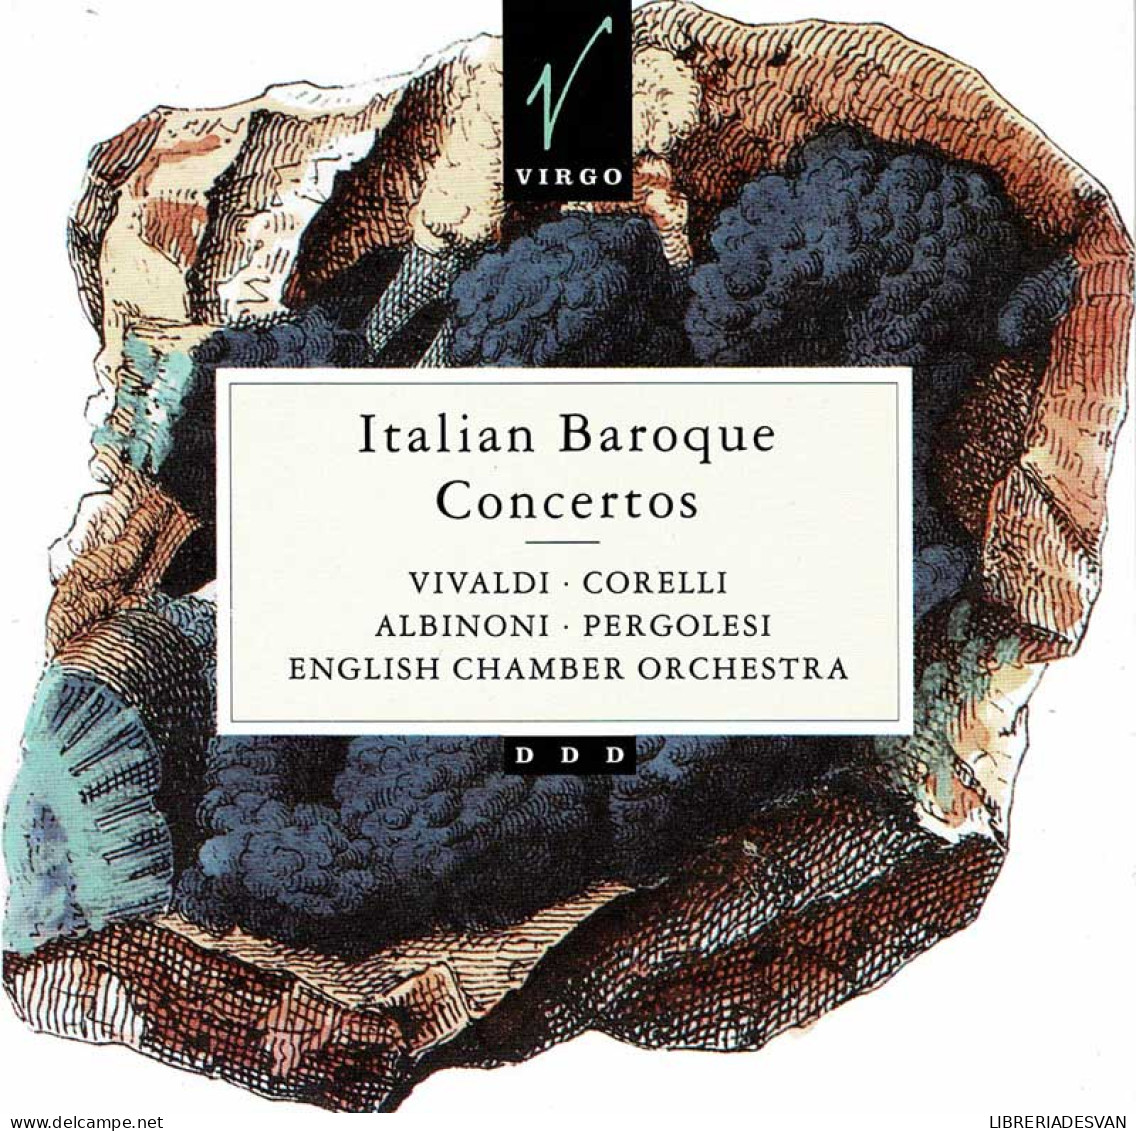 Vivaldi, Corelli, Albinoni, Pergolesi - Italian Baroque Concertos. CD - Klassik